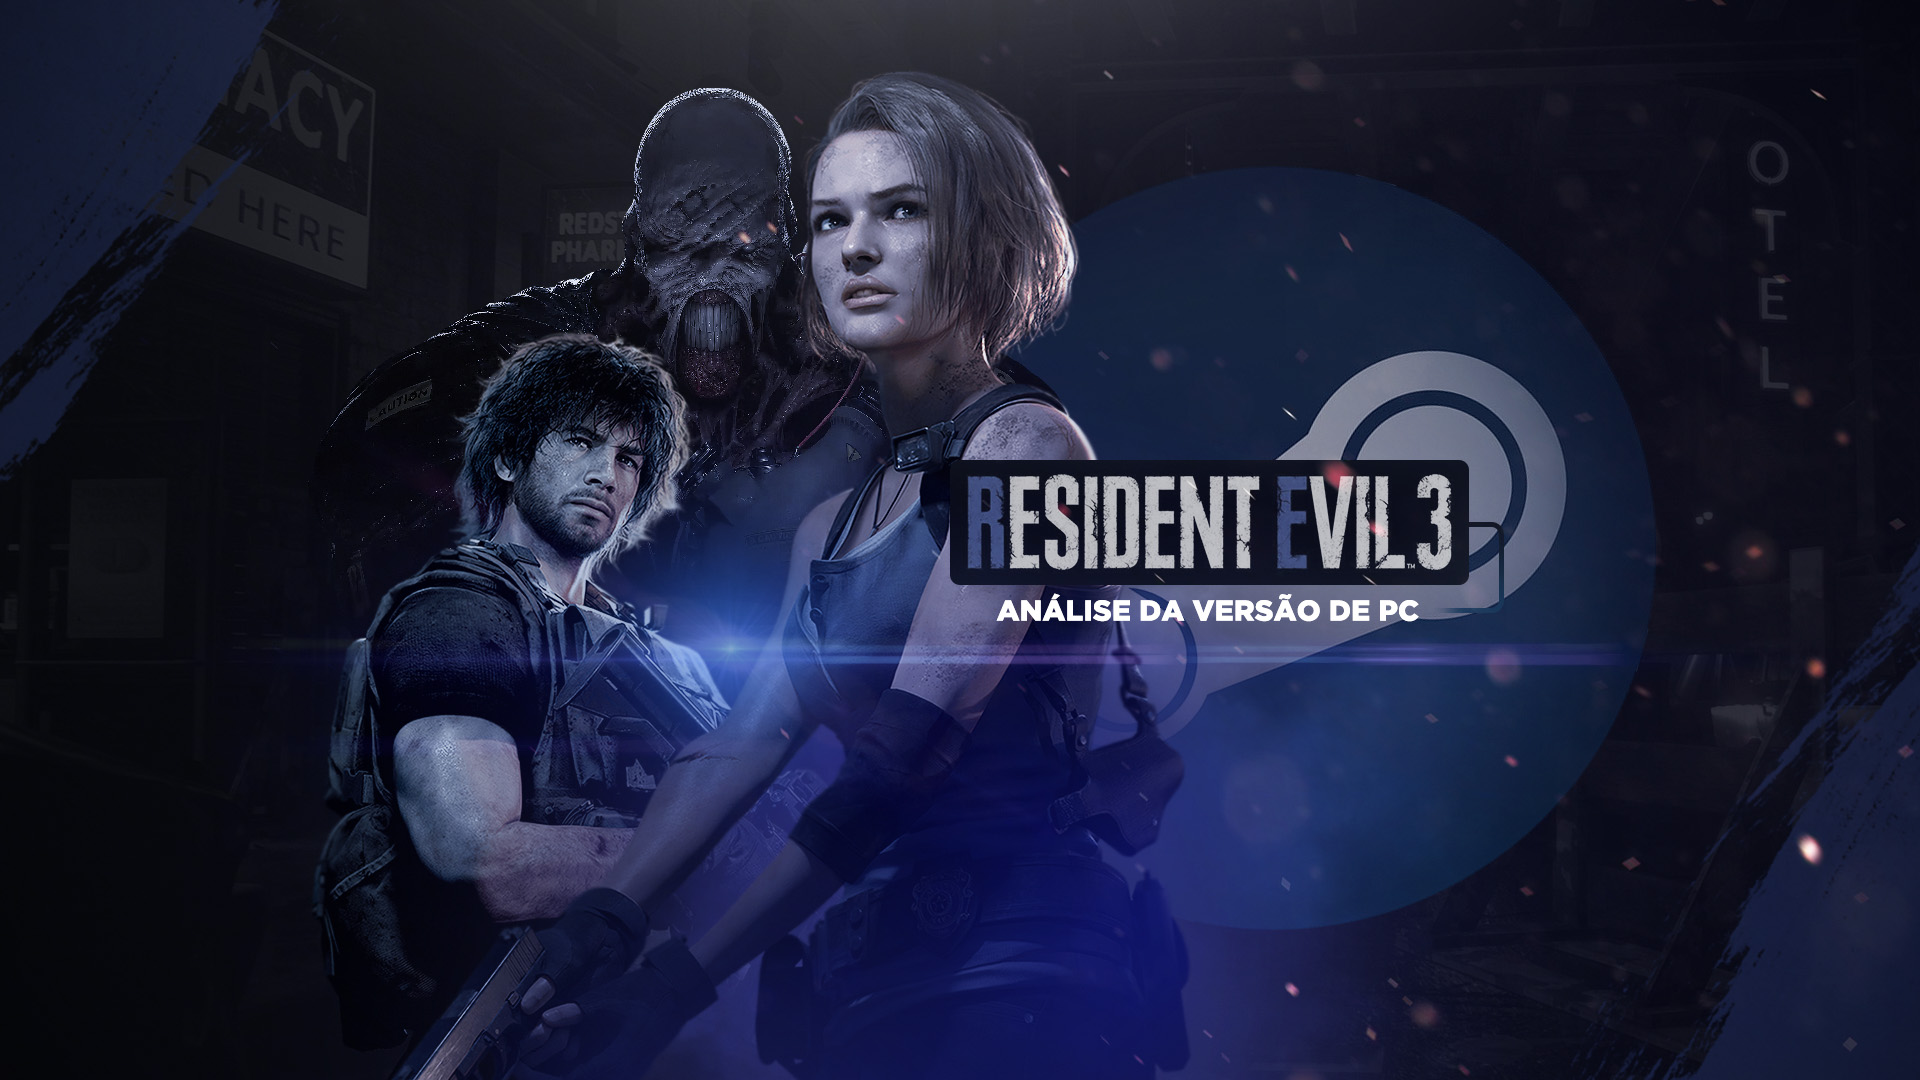 Analise Resident Evil 3 Pc Revil